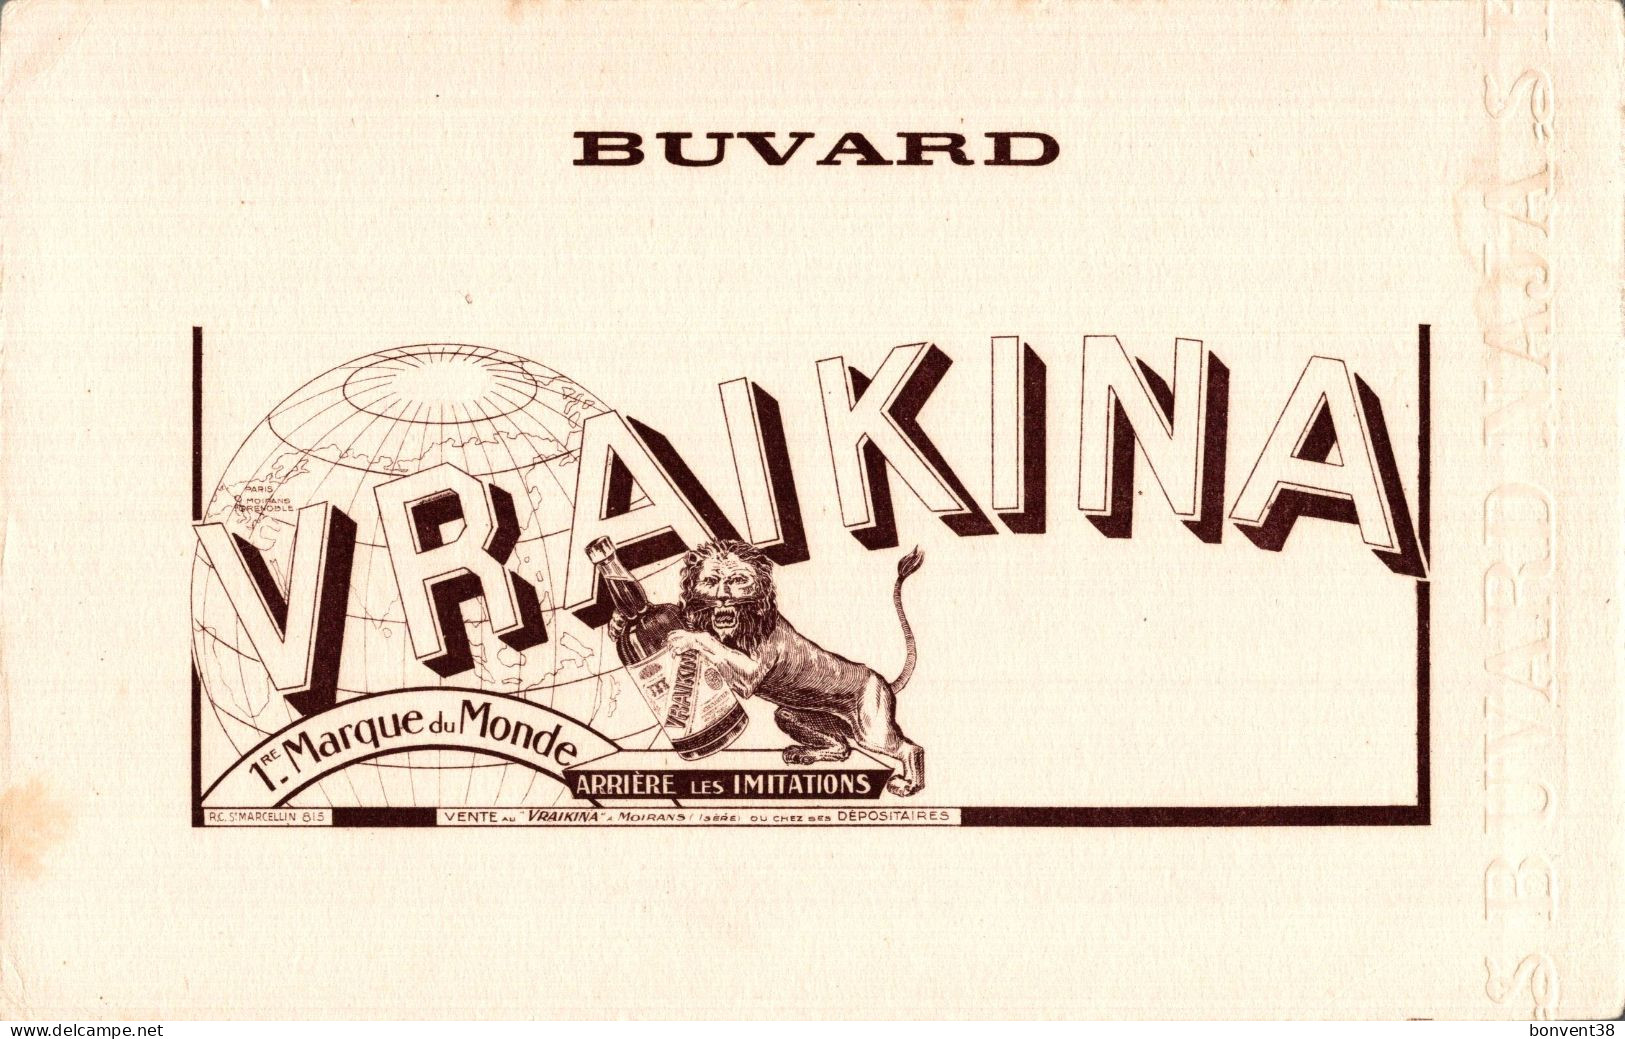 J2707 - BUVARD - VRAIKINA - LION - MOIRANS - Liqueur & Bière